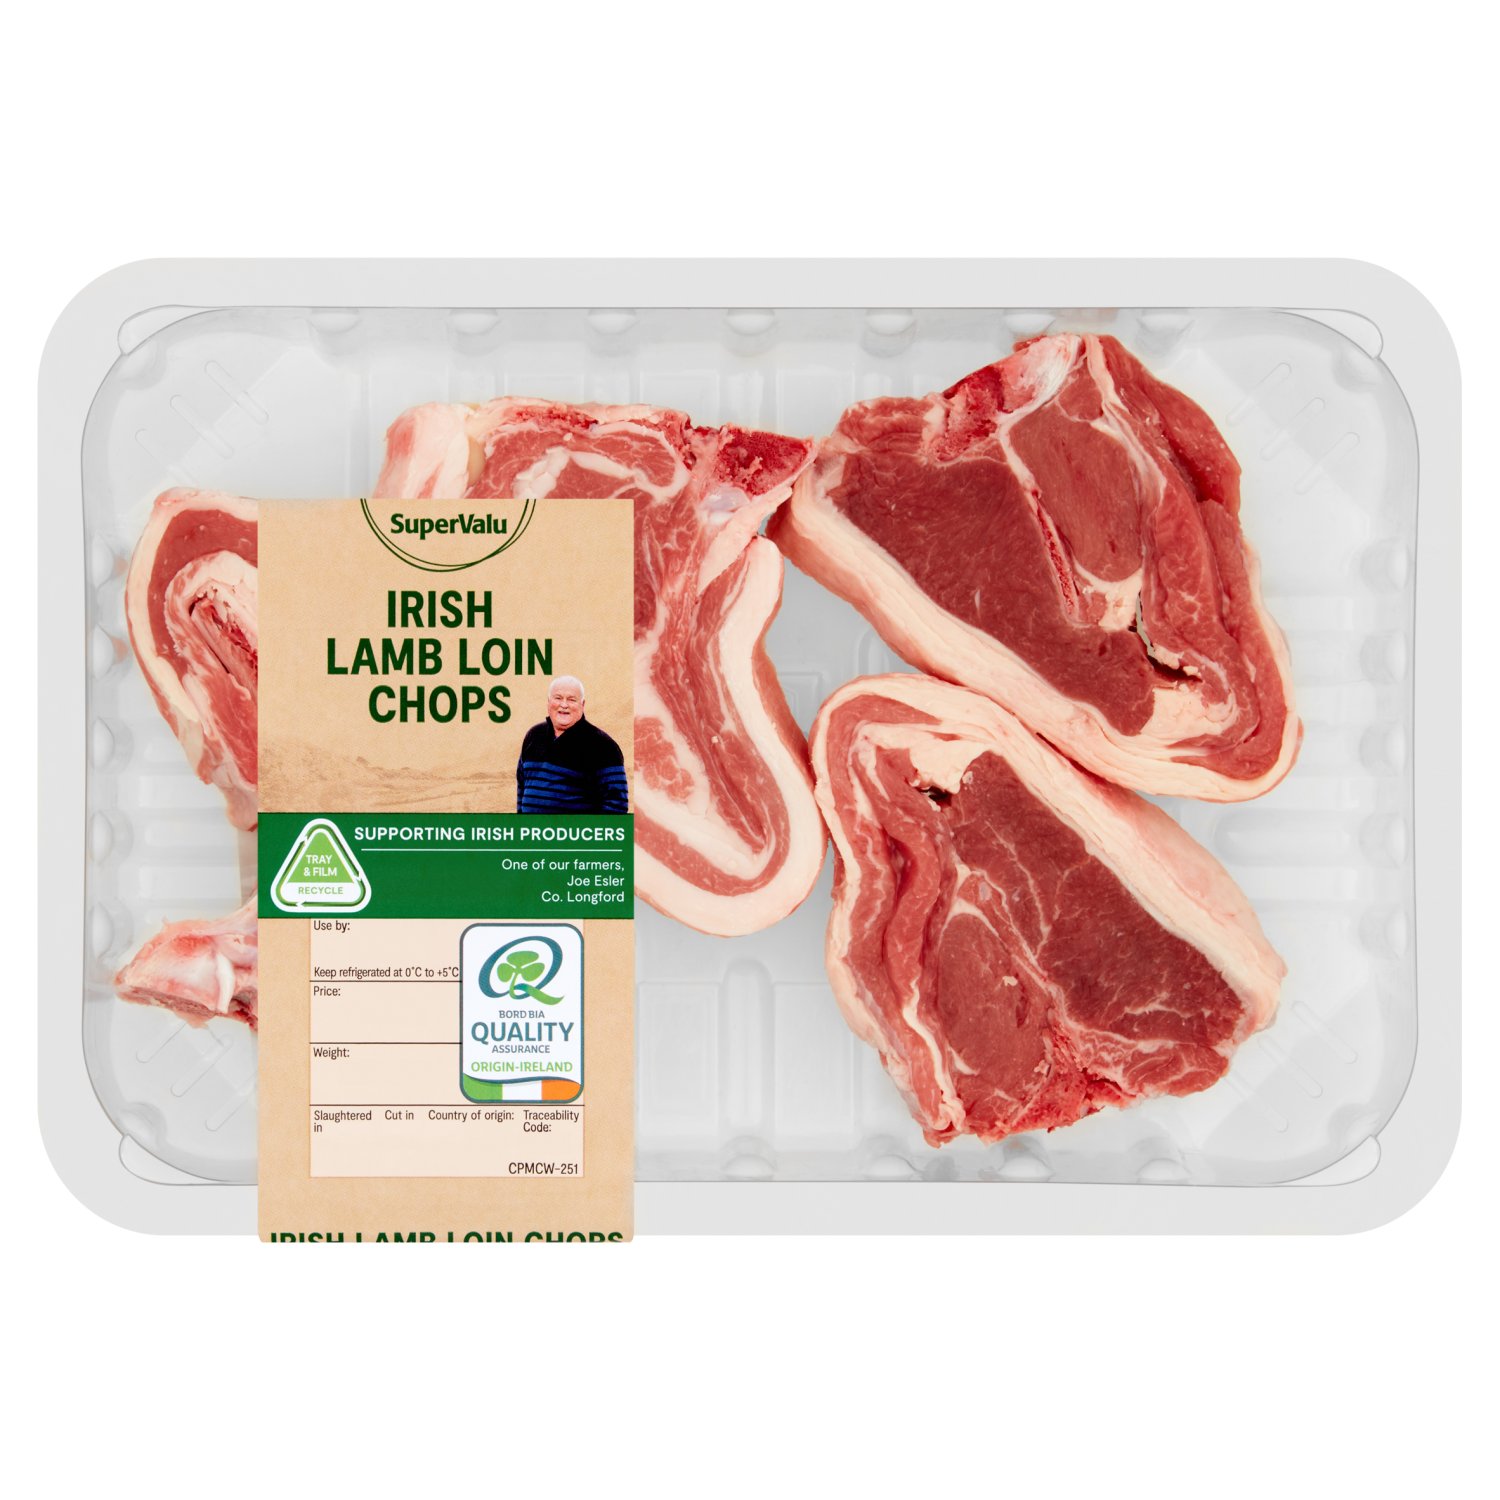 SuperValu Lamb Loin Chops 4 Pack (1 kg)